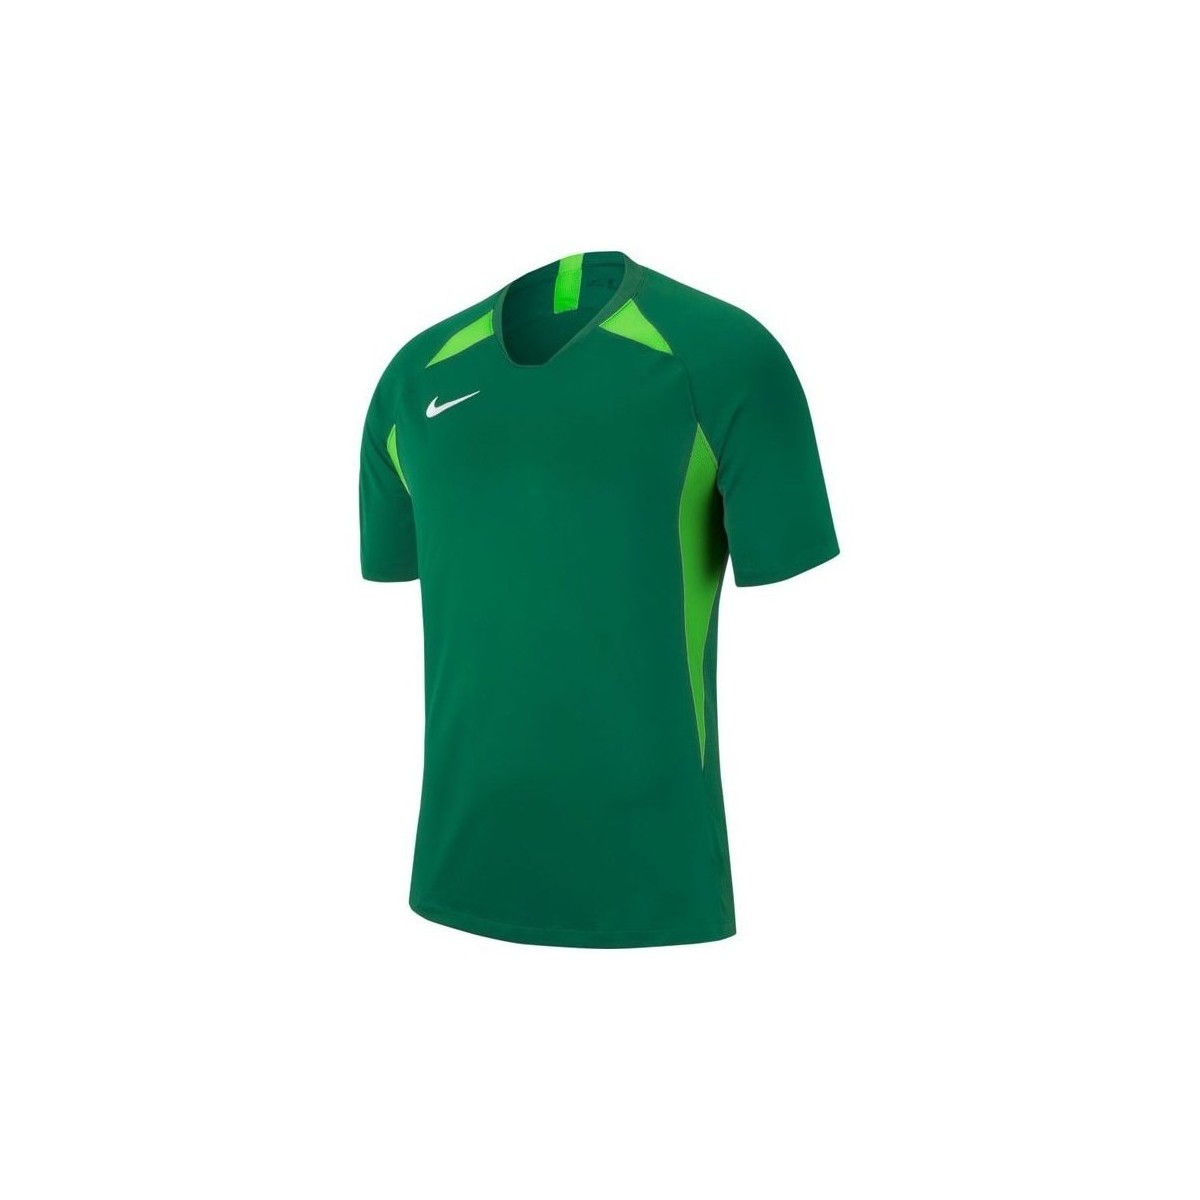 Îmbracaminte Băieți Tricouri mânecă scurtă Nike JR Legend verde